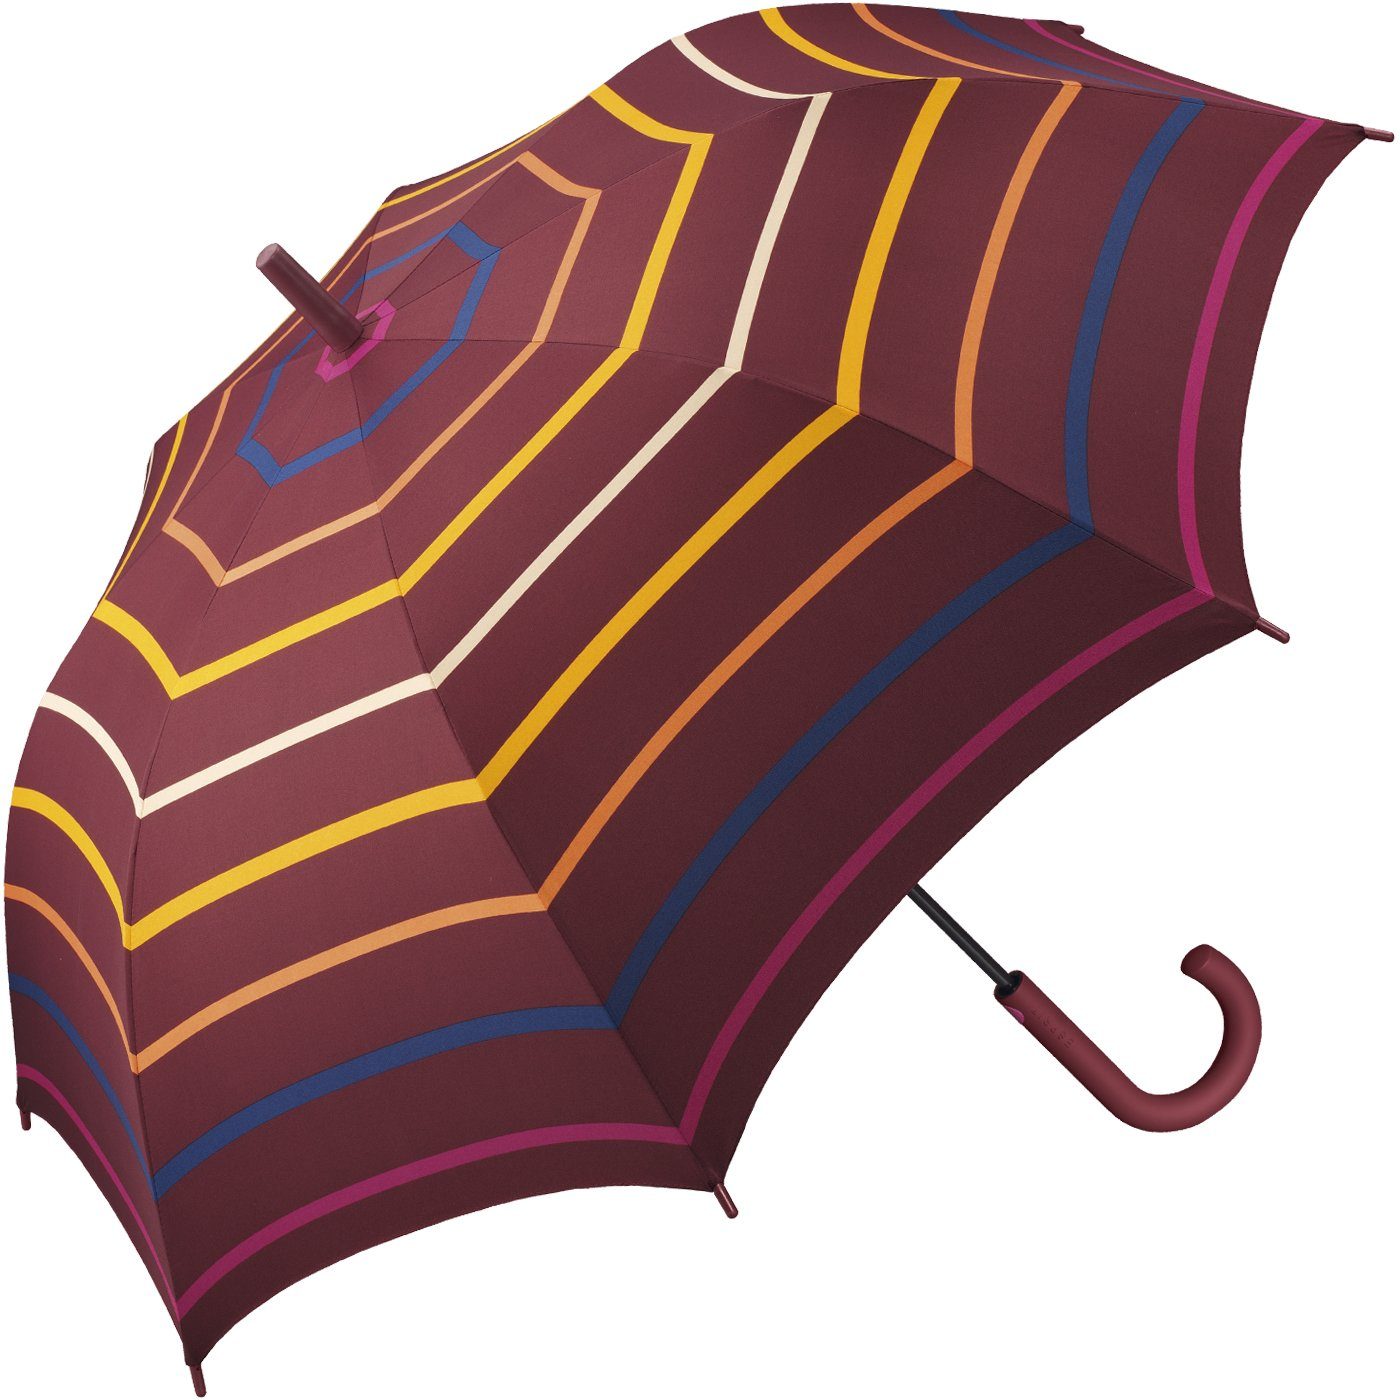 Damen warmen in stabil, mit Auf-Automatik, für Langregenschirm leicht, Farbtönen großer mit Regenschirm Streifen Esprit